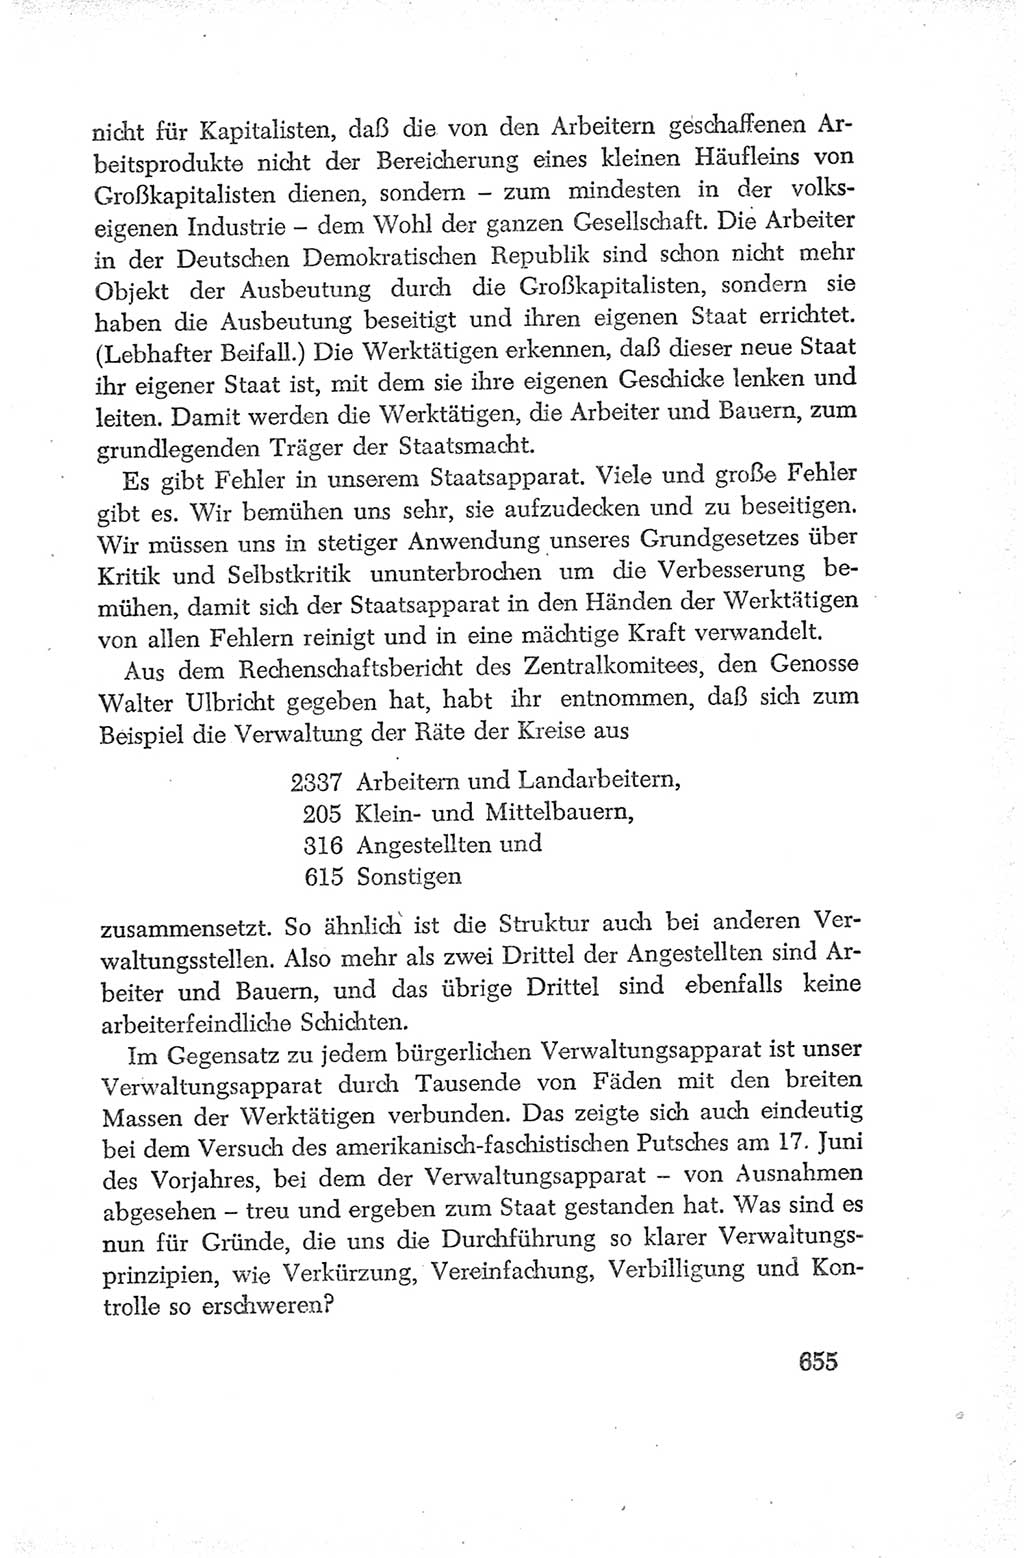 Protokoll der Verhandlungen des Ⅳ. Parteitages der Sozialistischen Einheitspartei Deutschlands (SED) [Deutsche Demokratische Republik (DDR)] 1954, Seite 655